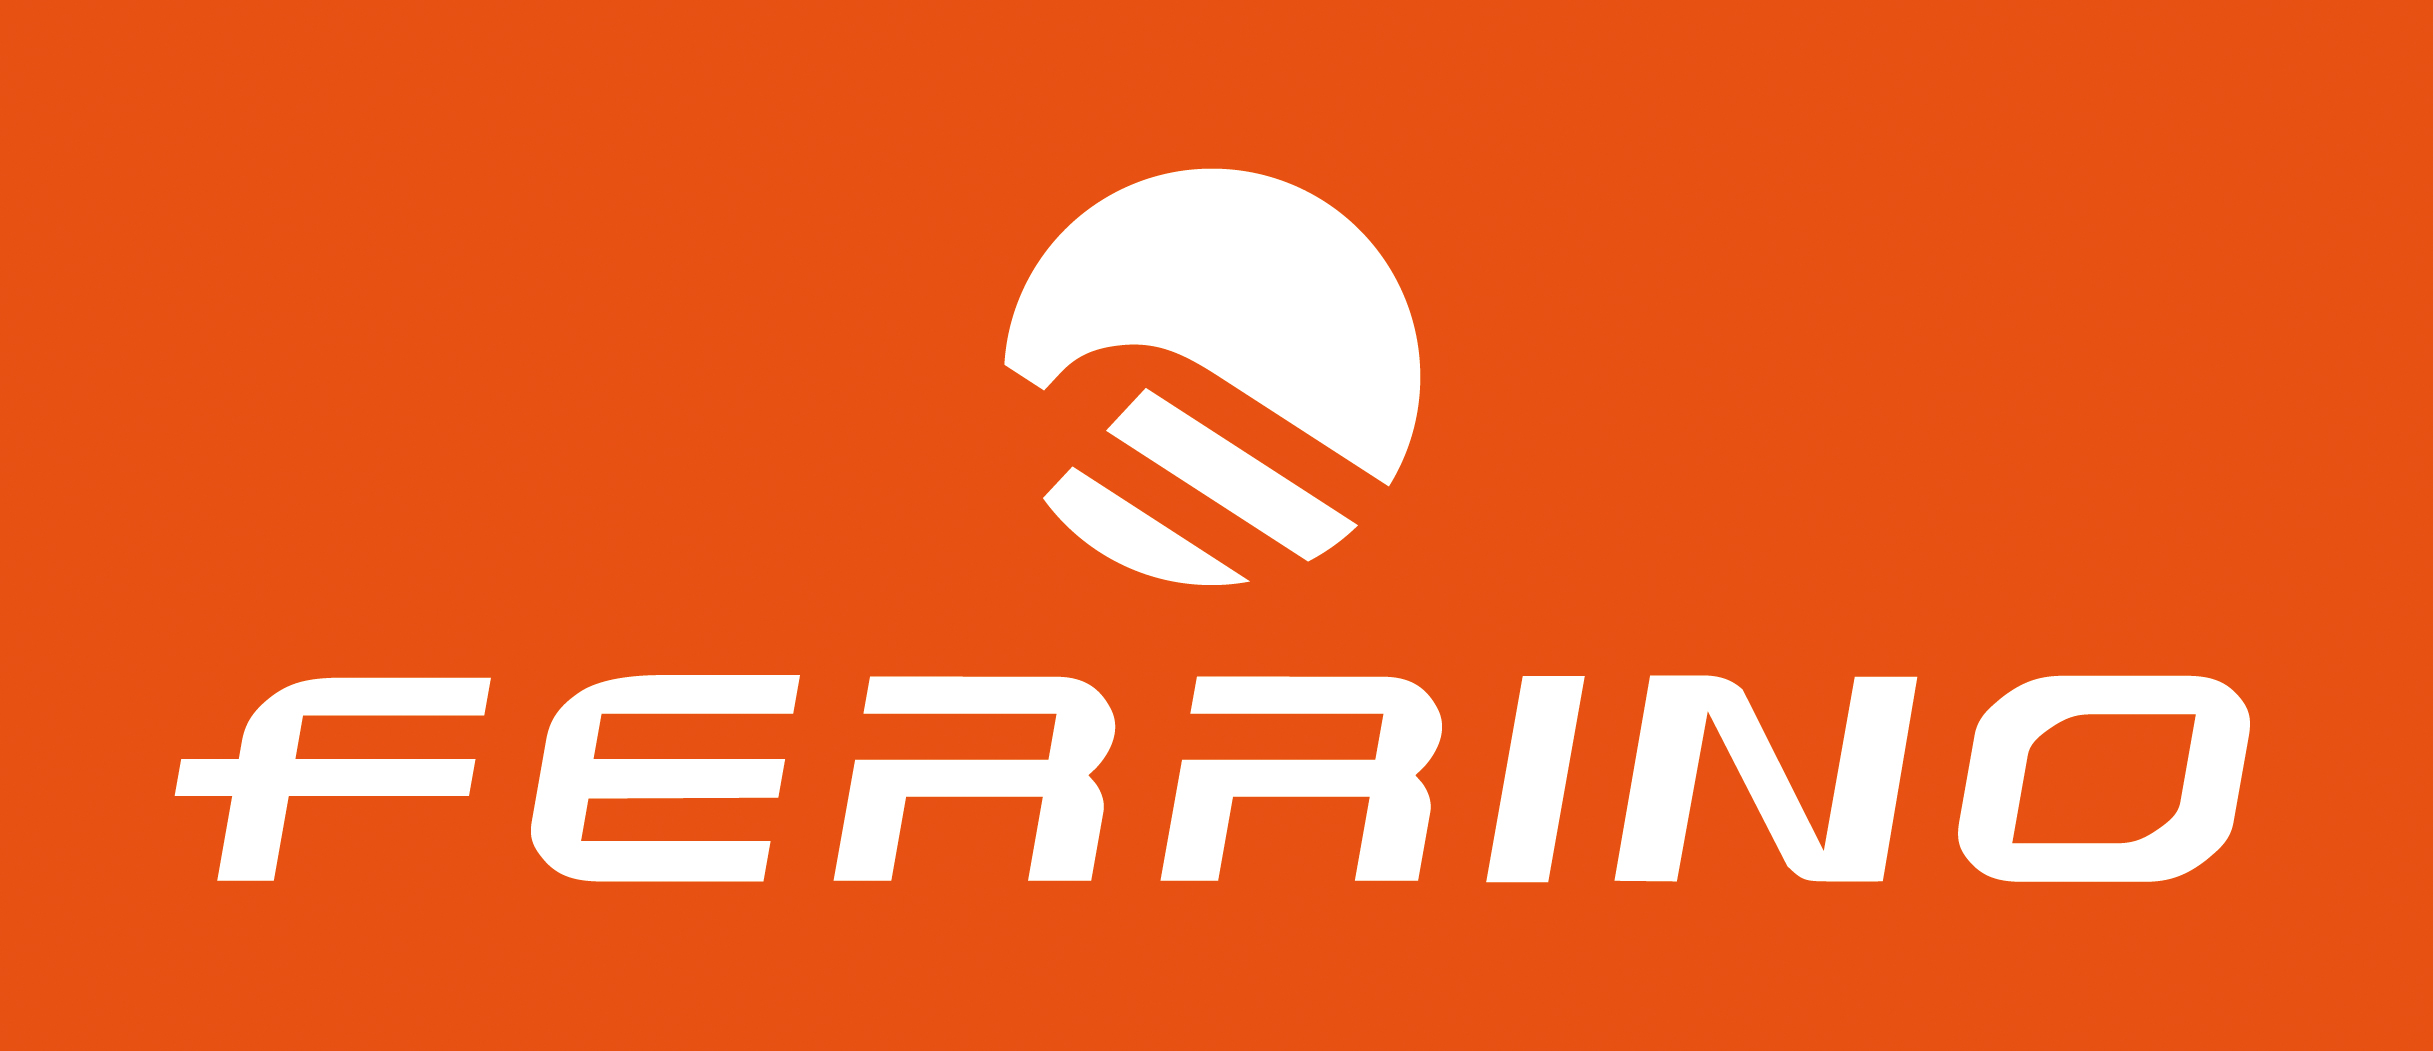 Ferrino : Brand Short Description Type Here.